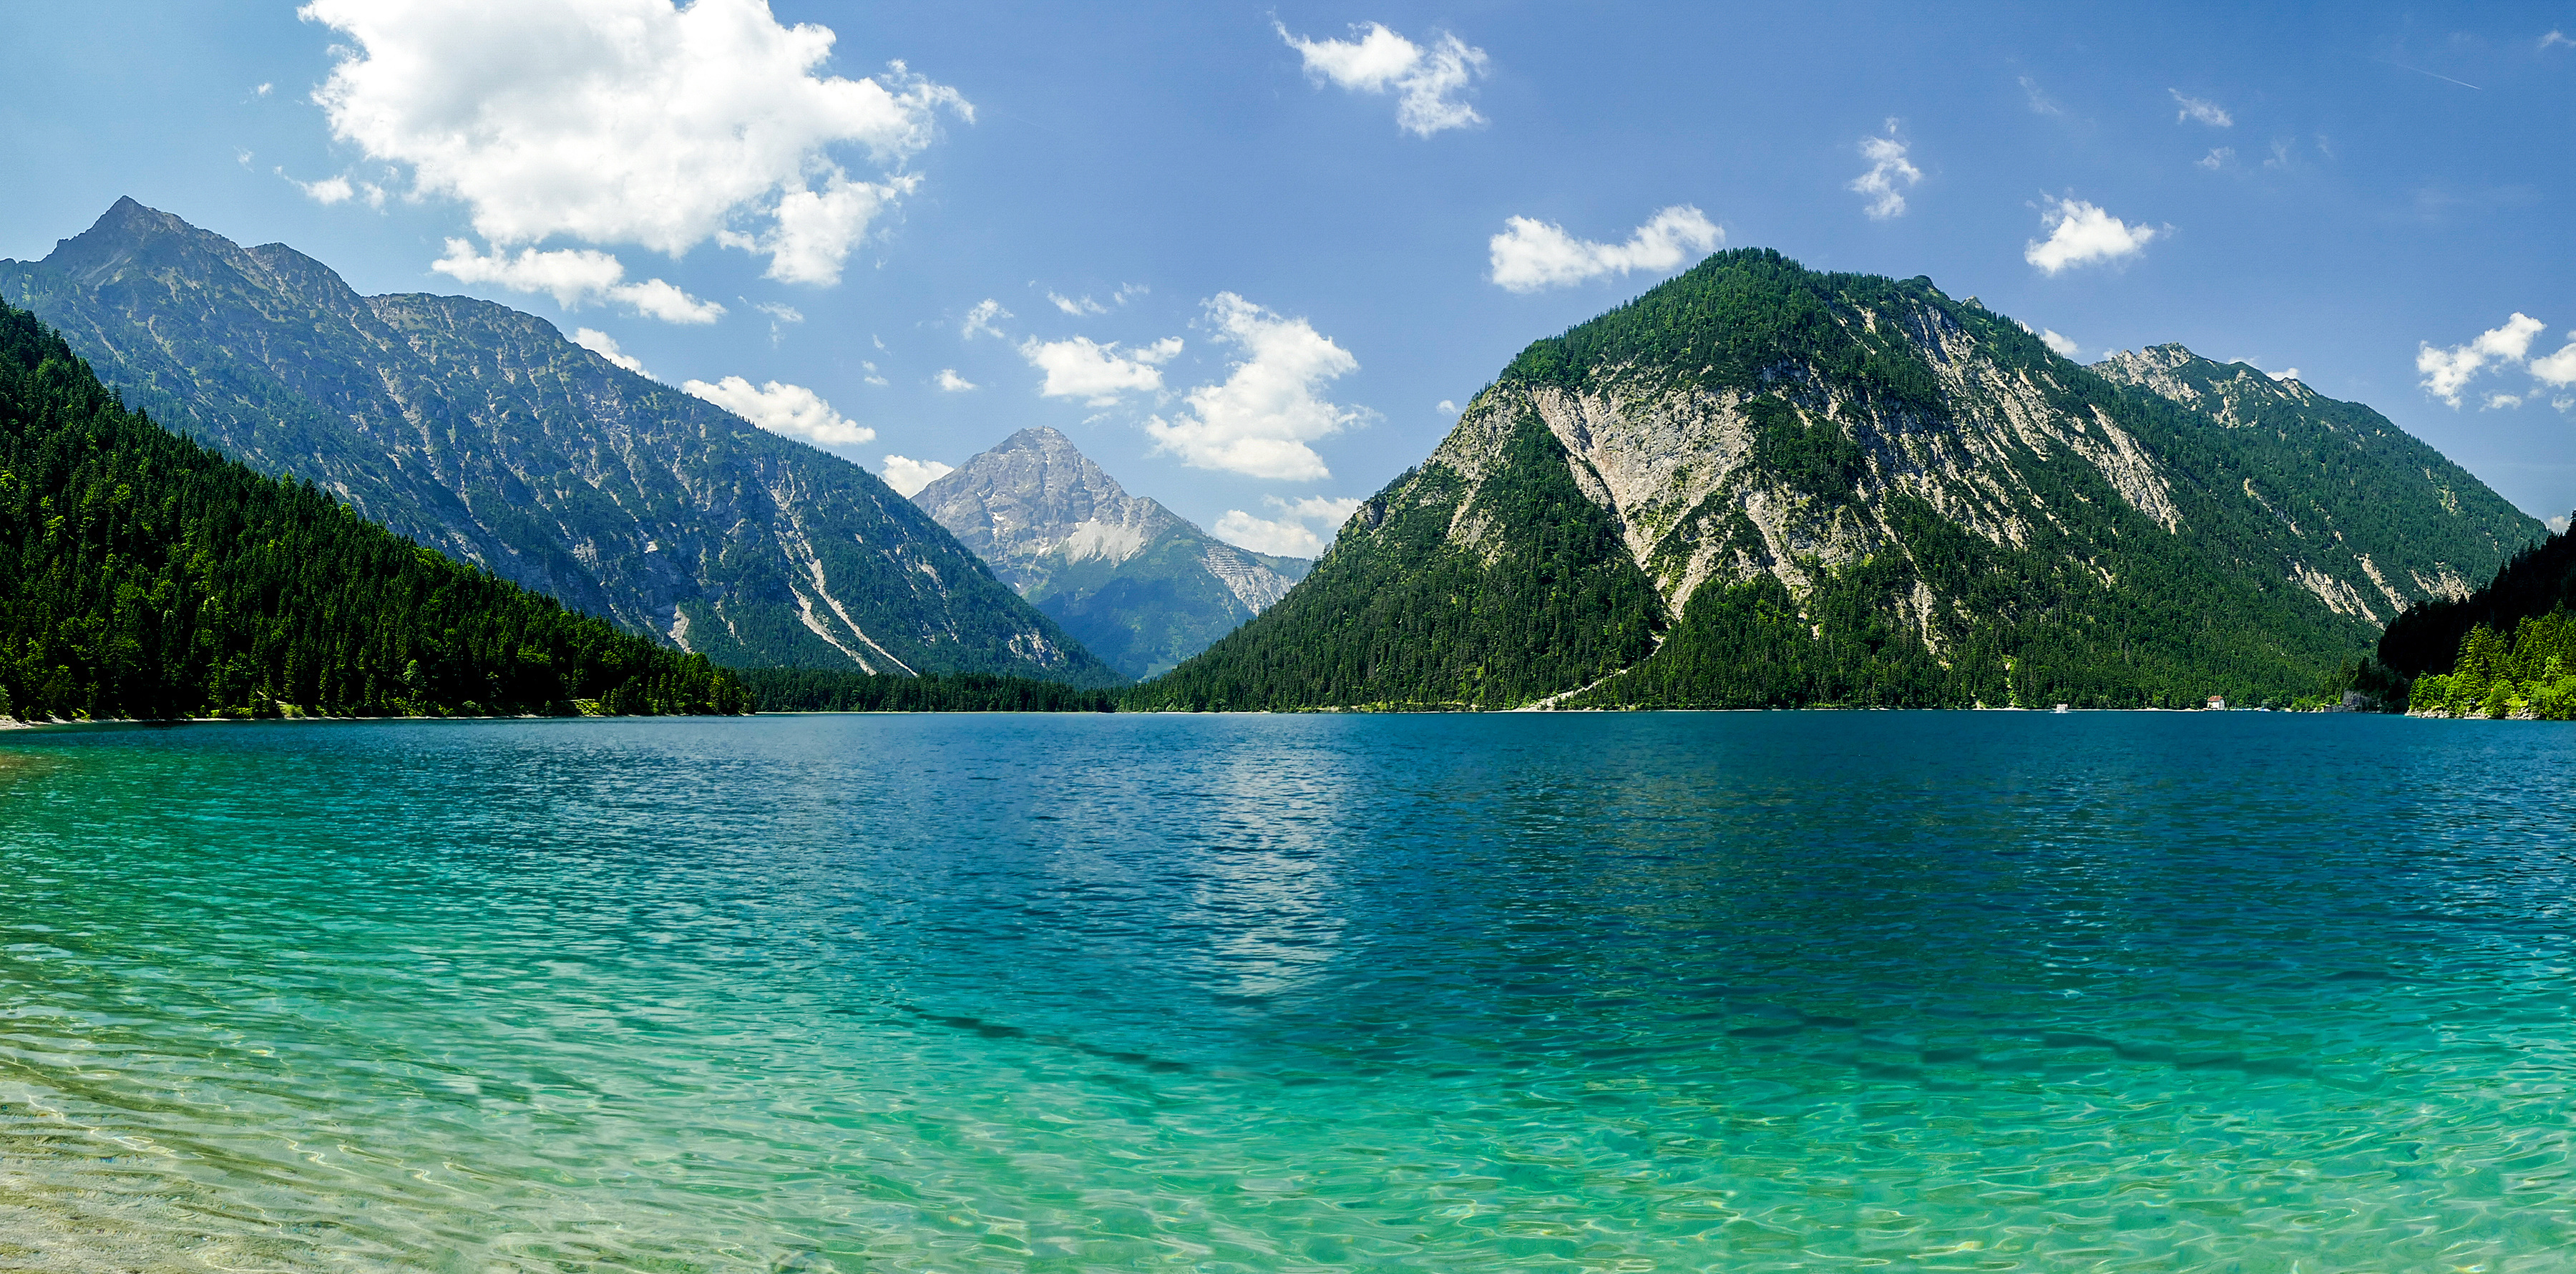 Фотография Австрия Plansee Горы Природа Озеро мха 3600x1780 гора Мох мхом